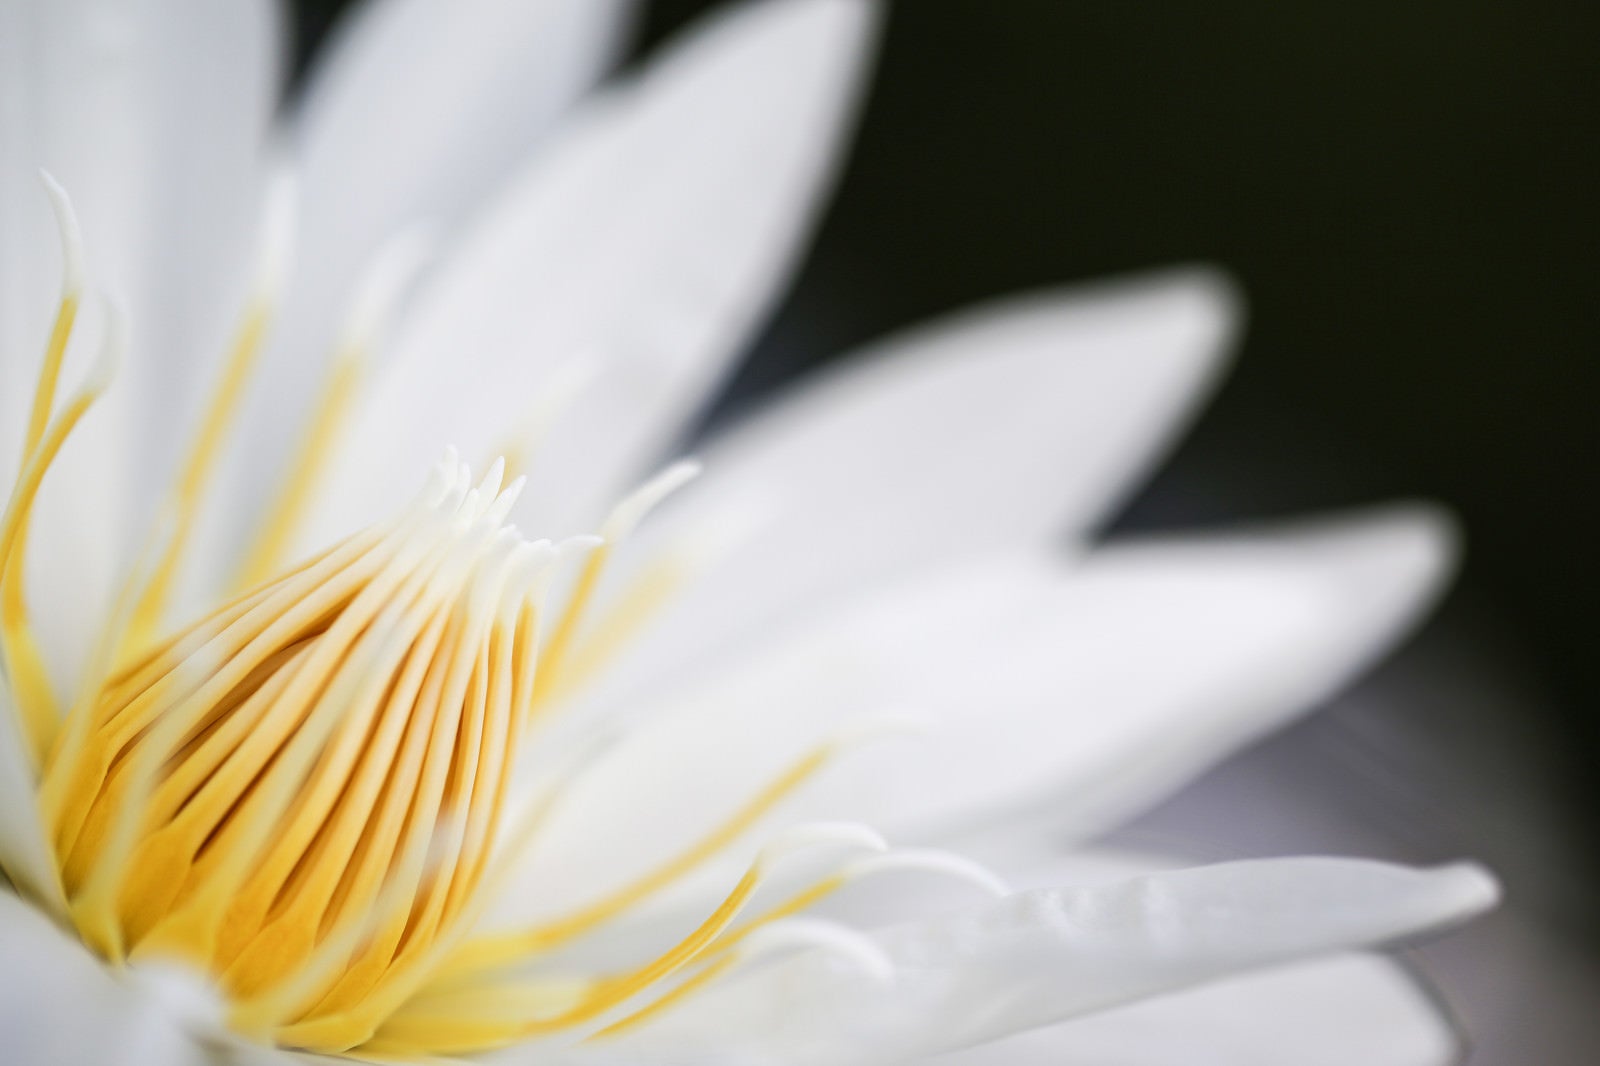 「白い睡蓮の雄しべ」の写真